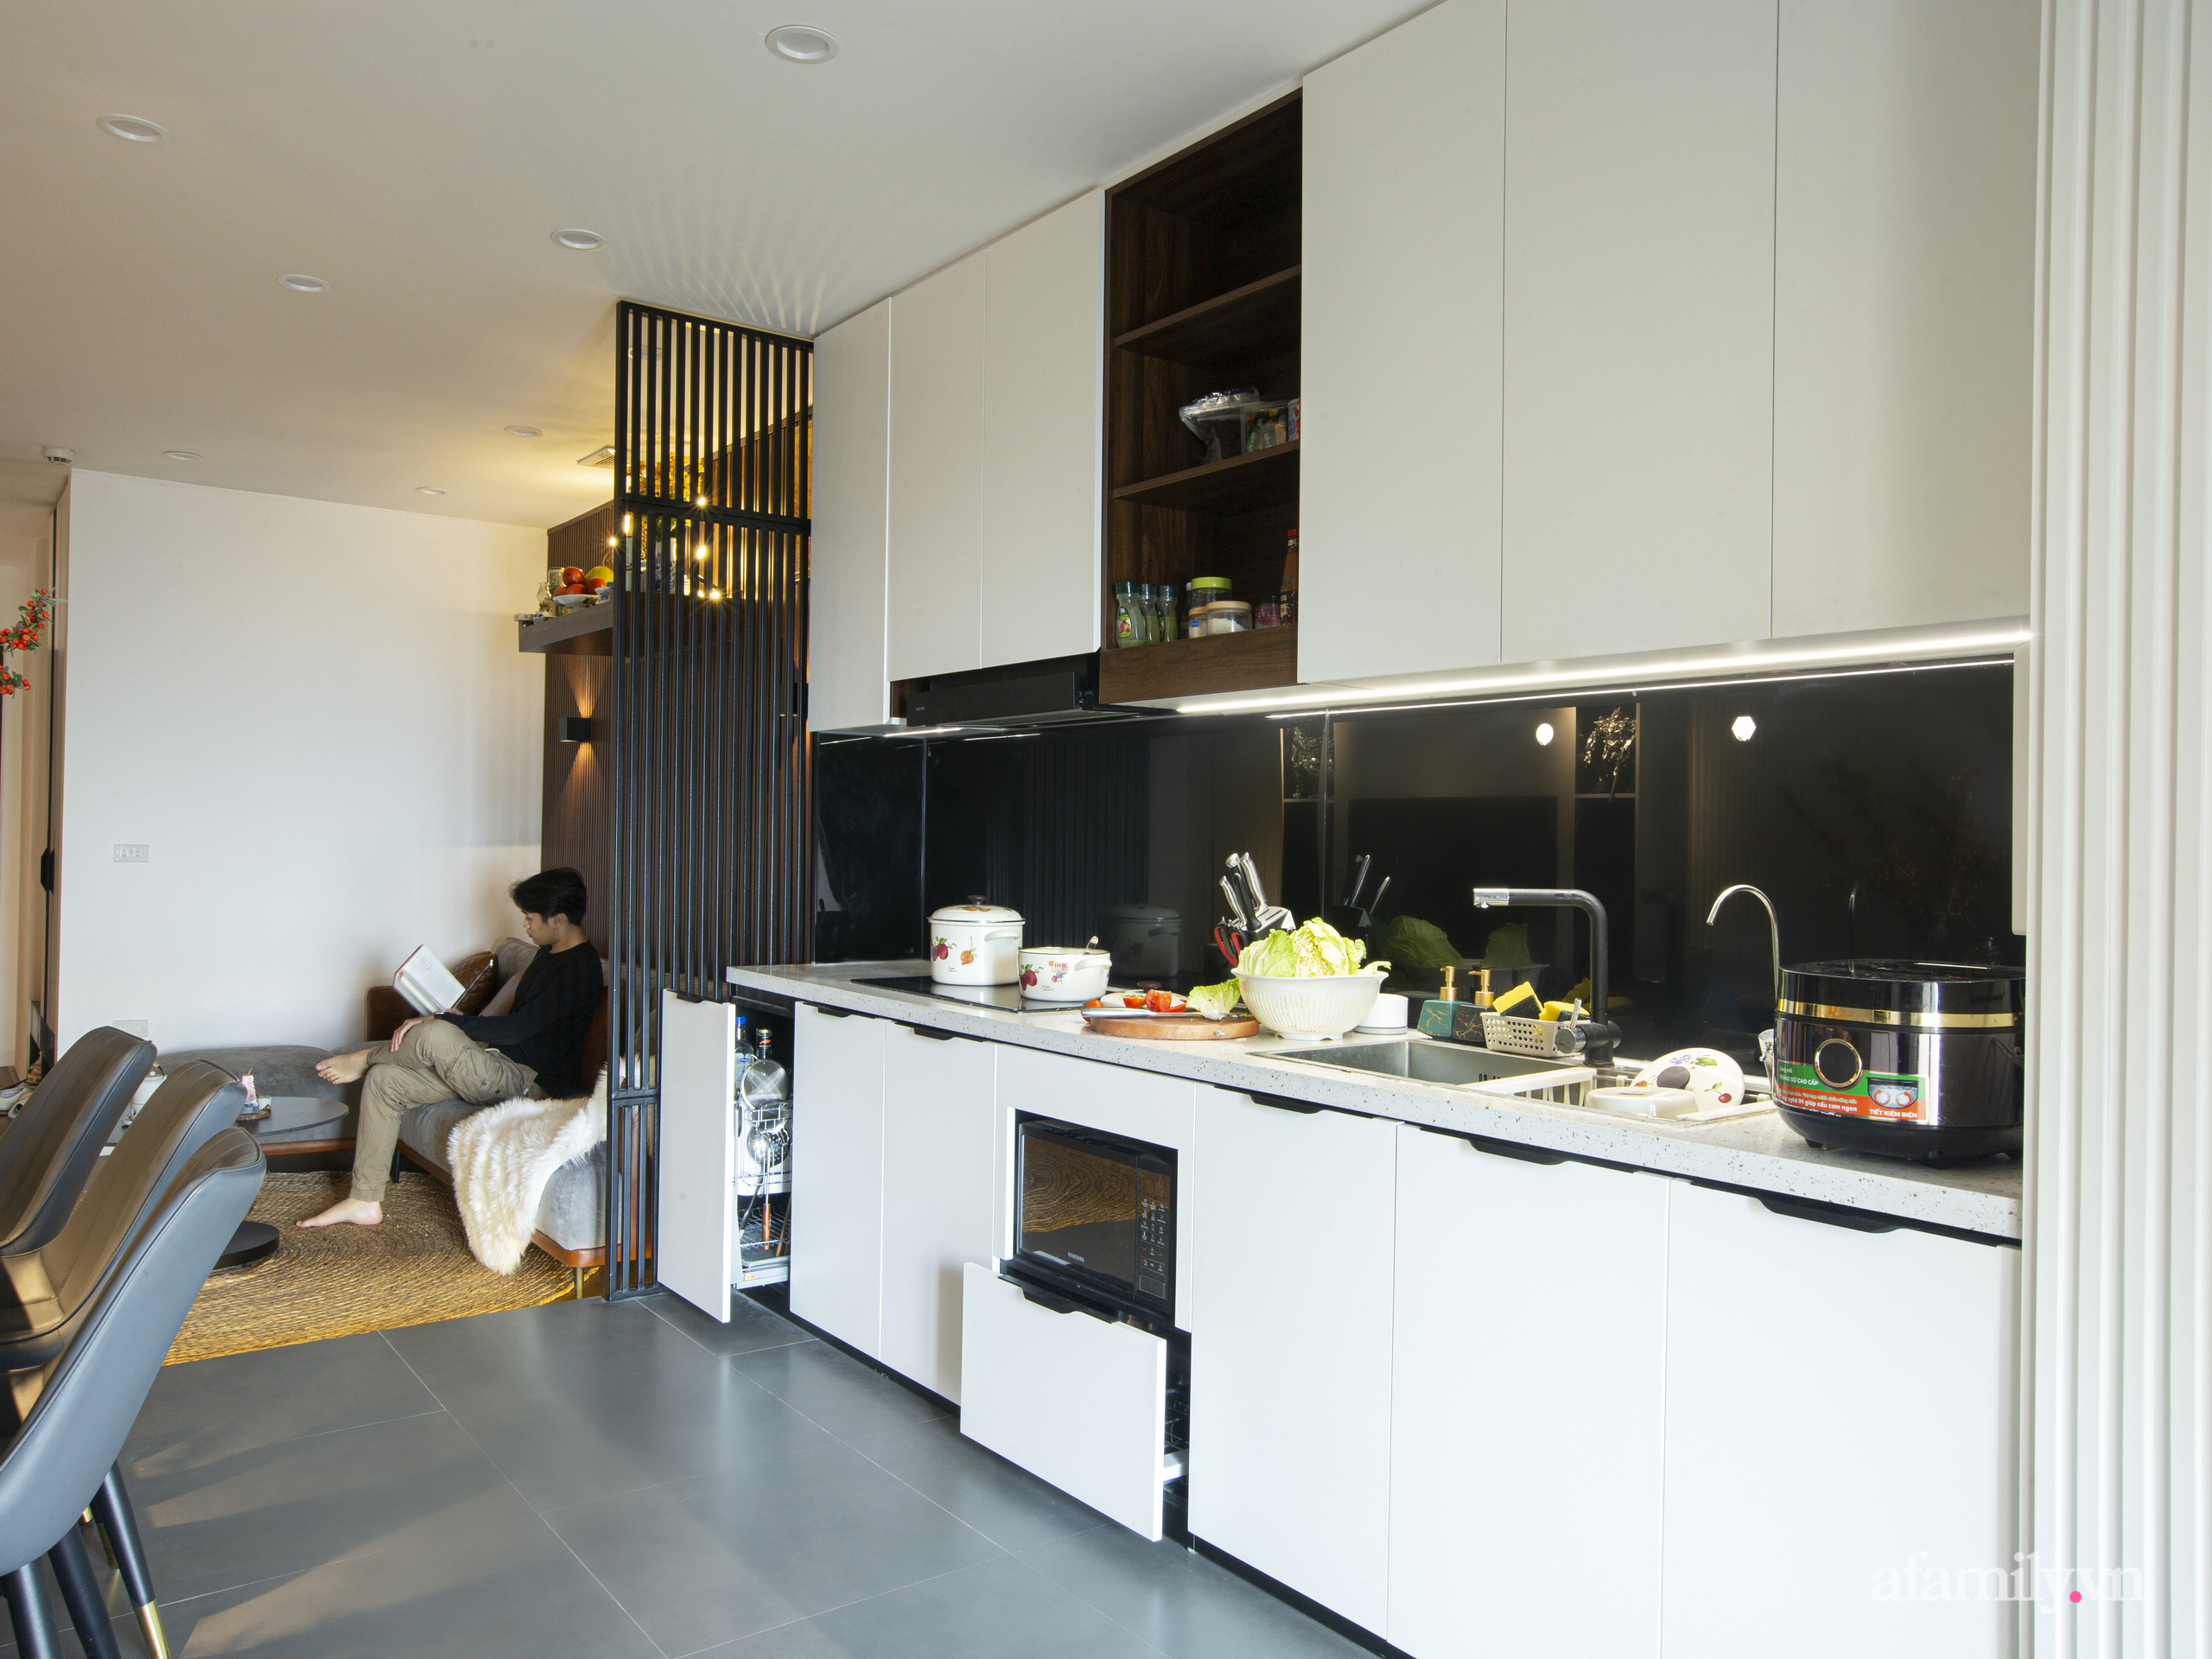 Kiến trúc sư thiết kế căn hộ 5 sao rộng 90m² theo phong cách tropical tại Hà Đông với chi phí 500 triệu đồng - Ảnh 7.